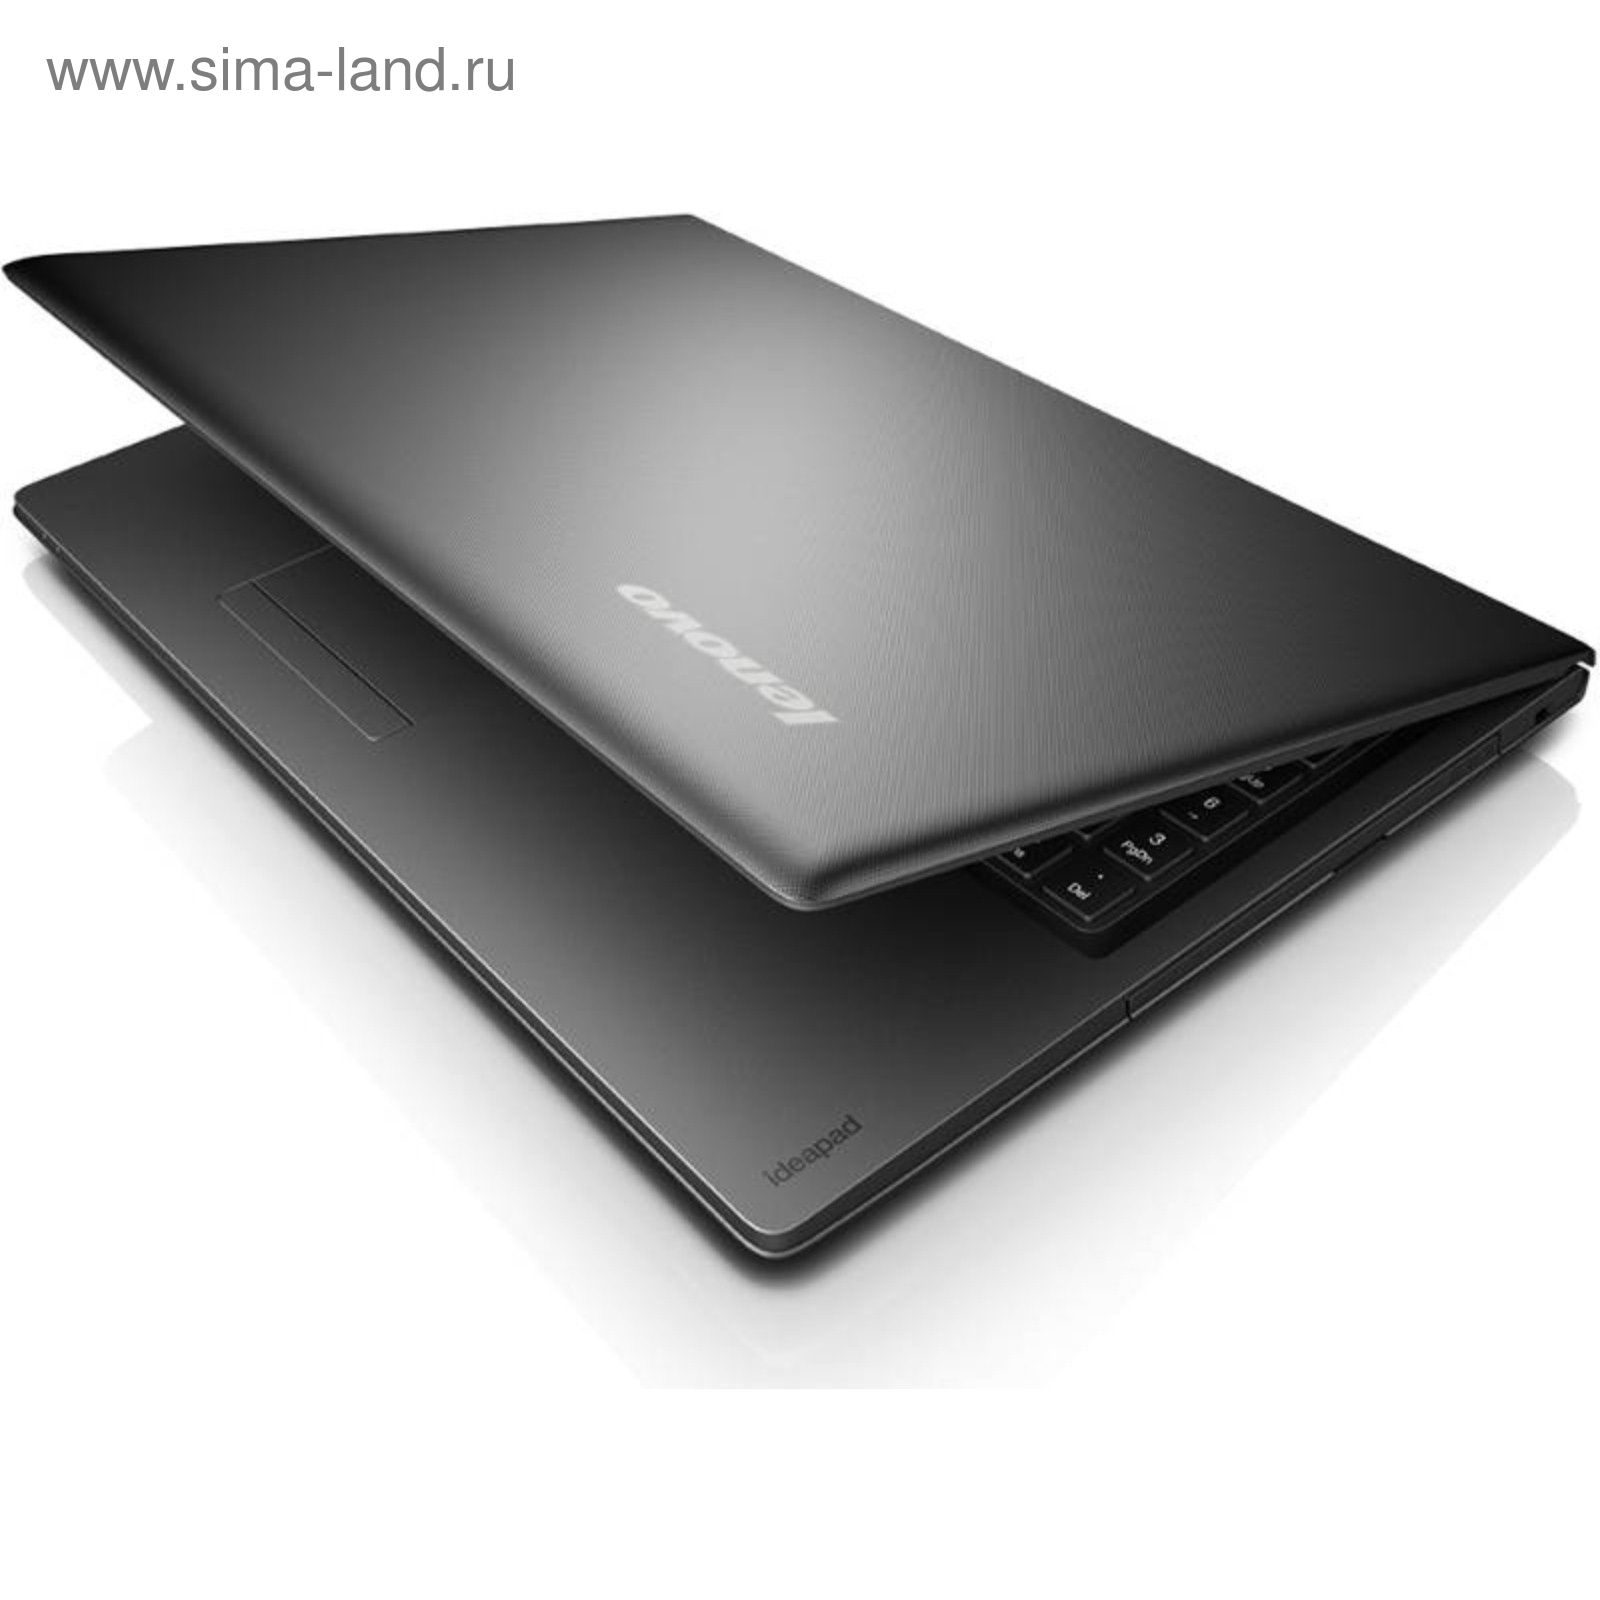 Купить Ноутбук Lenovo Ideapad 100-15ibd 80qq014urk